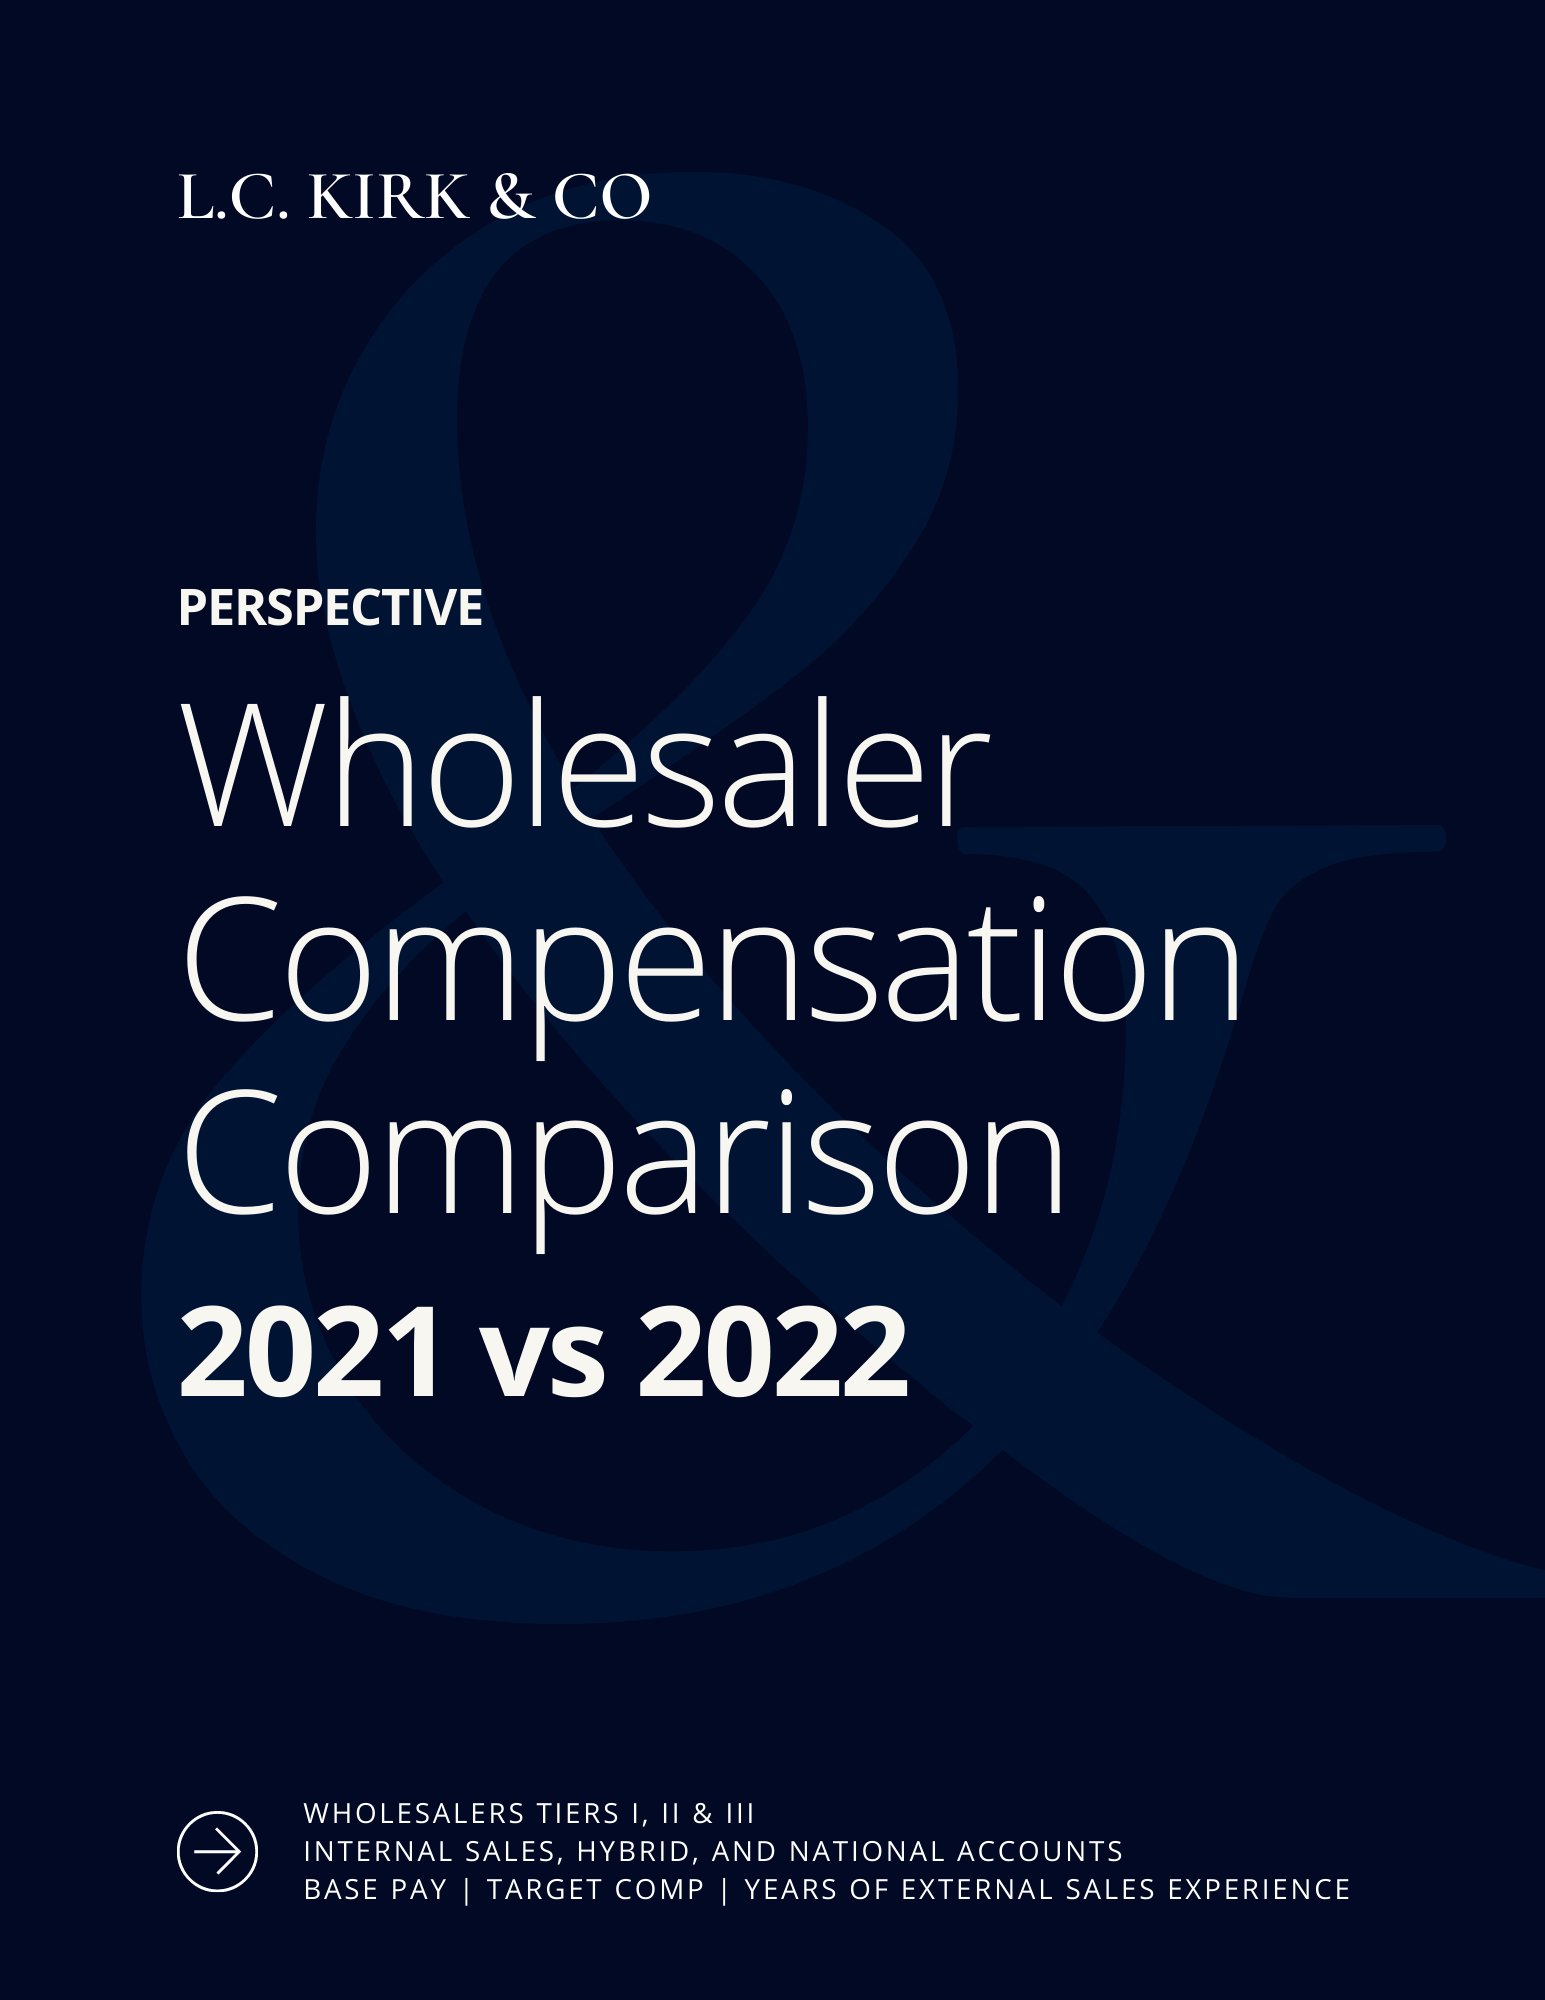 NEW LOOK L.C. KIRK & CO Wholesaler Compensation Comparison 2021 vs 2022